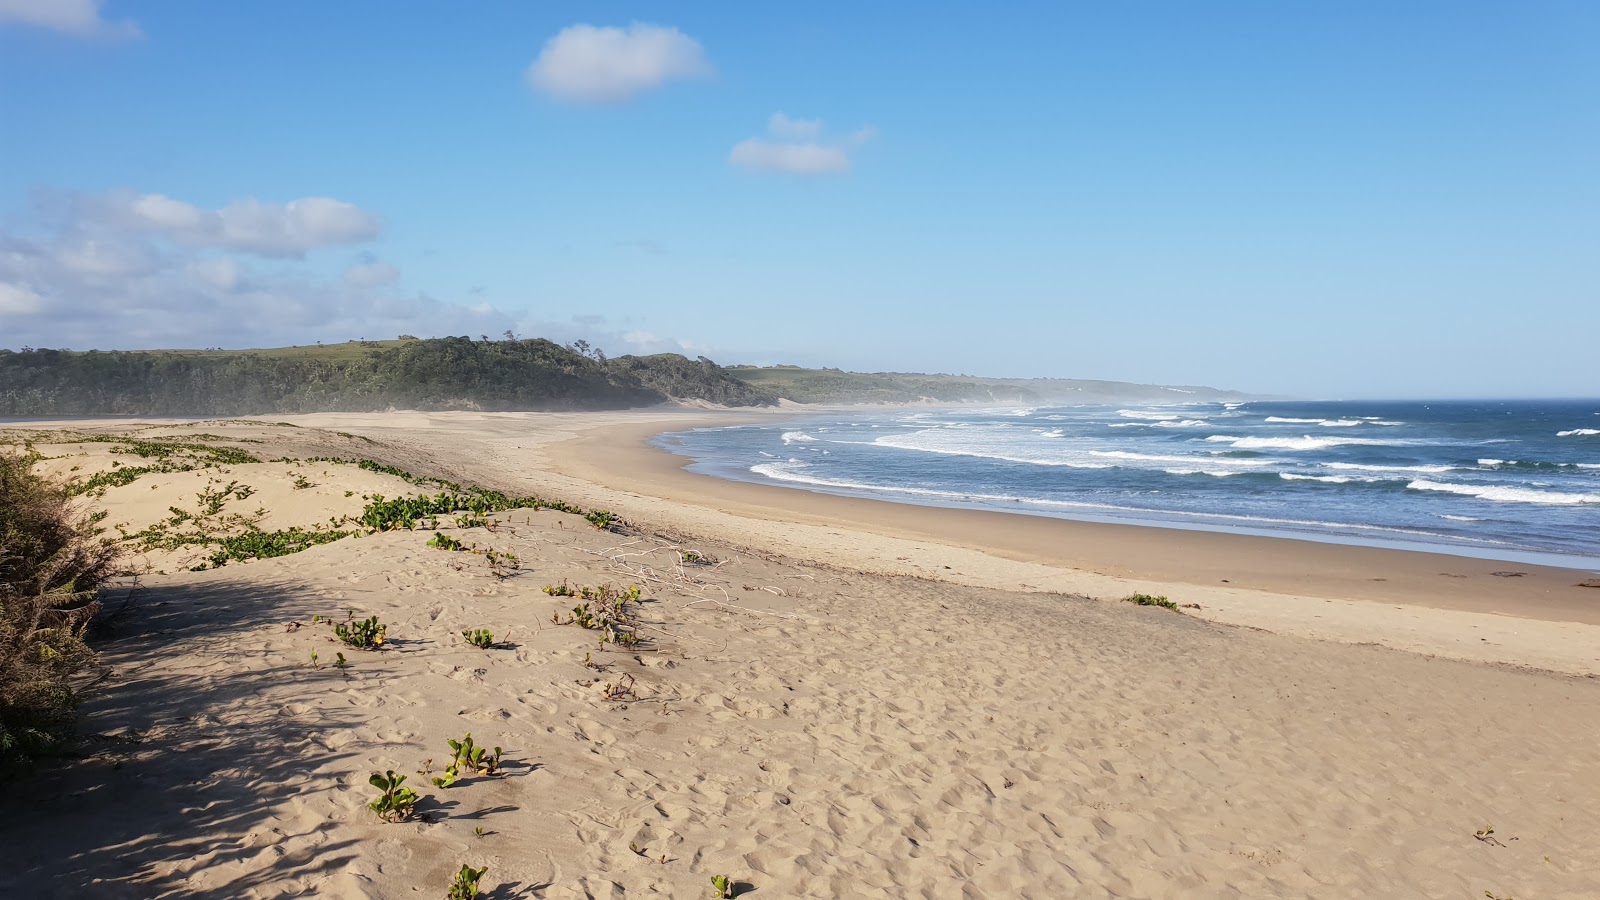 Zdjęcie Seagulls beach z powierzchnią jasny piasek